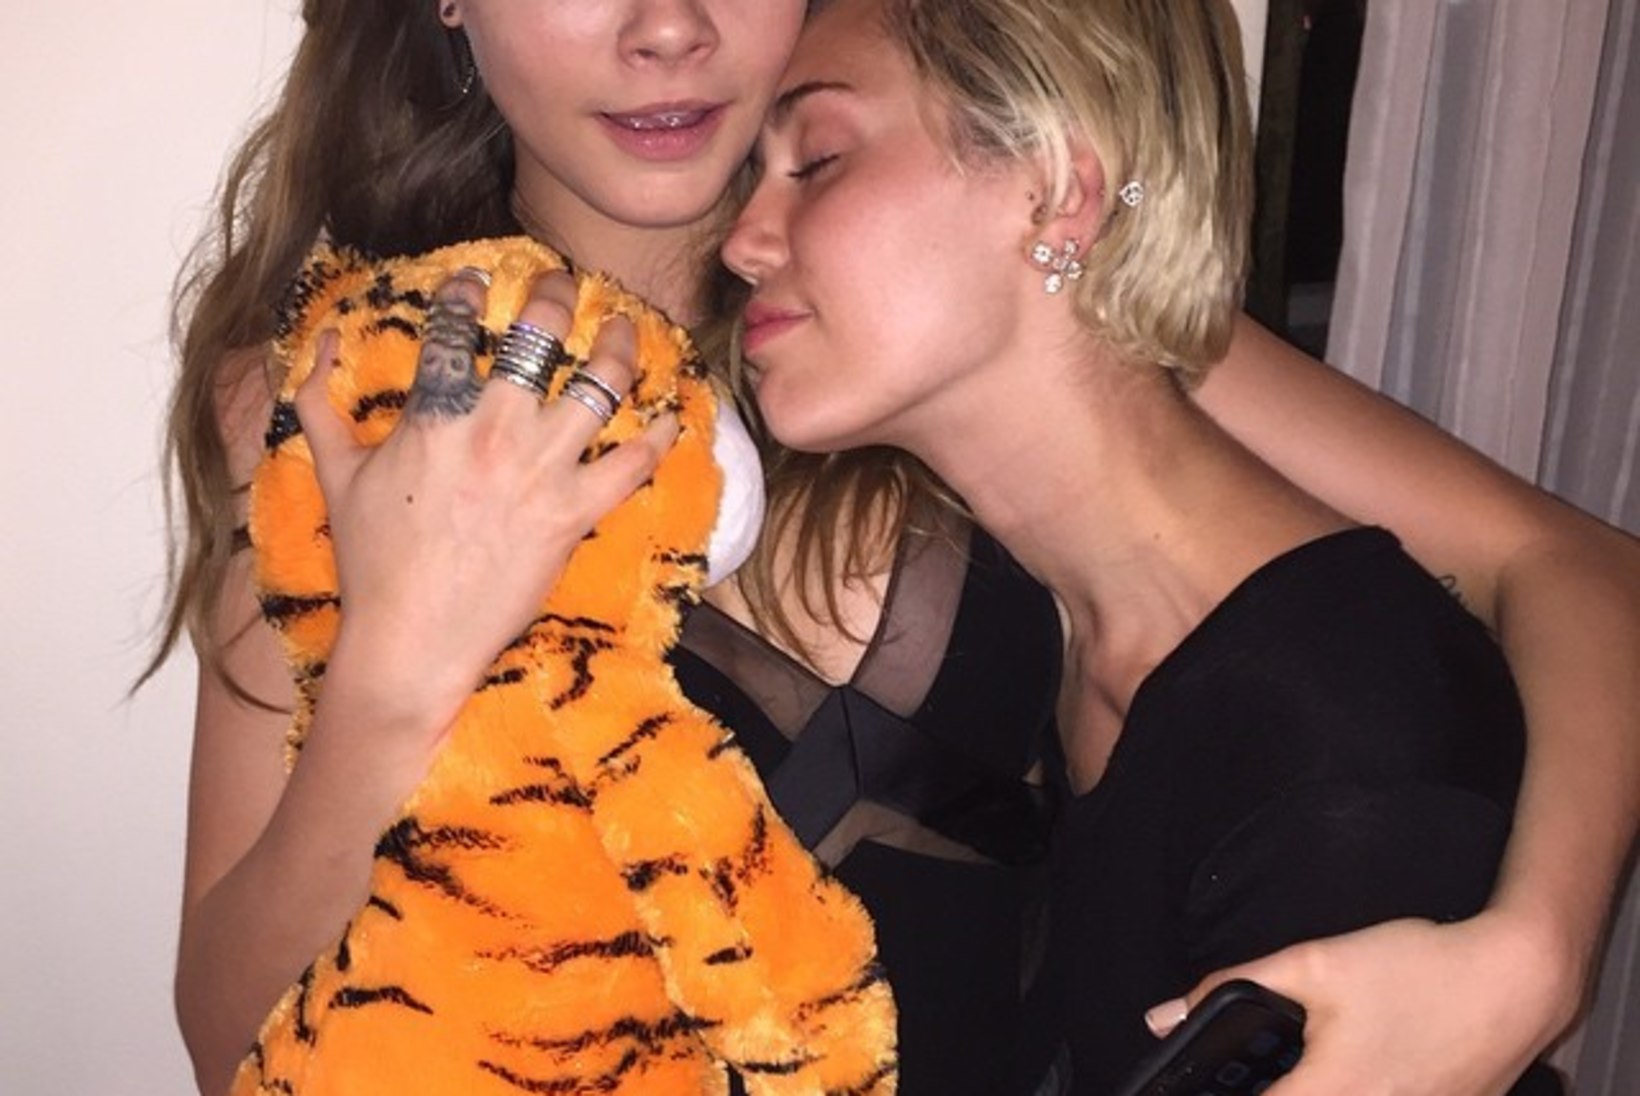 FOTOD: Miley suudles peol oma sõbranna ja saladusliku noormehega!